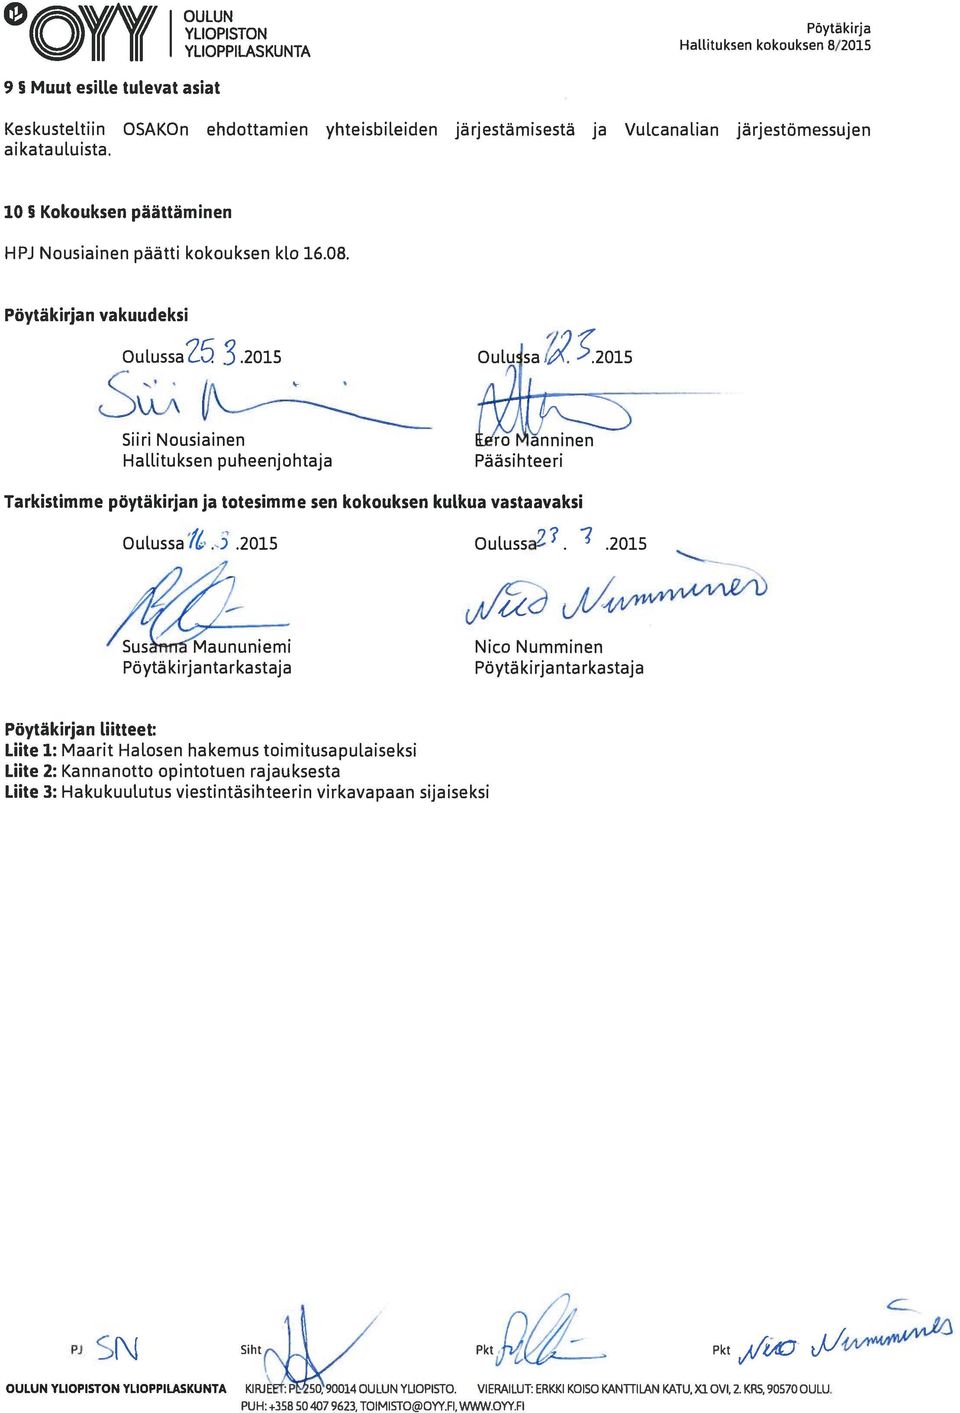 aikatauluista. 10 Kokouksen päättäminen HPJ Nousiainen päätti kokouksen klo 16.08. Pöytä kirjan vakuudeksi OulussaZ 5 3.2015 Ou1usa i.